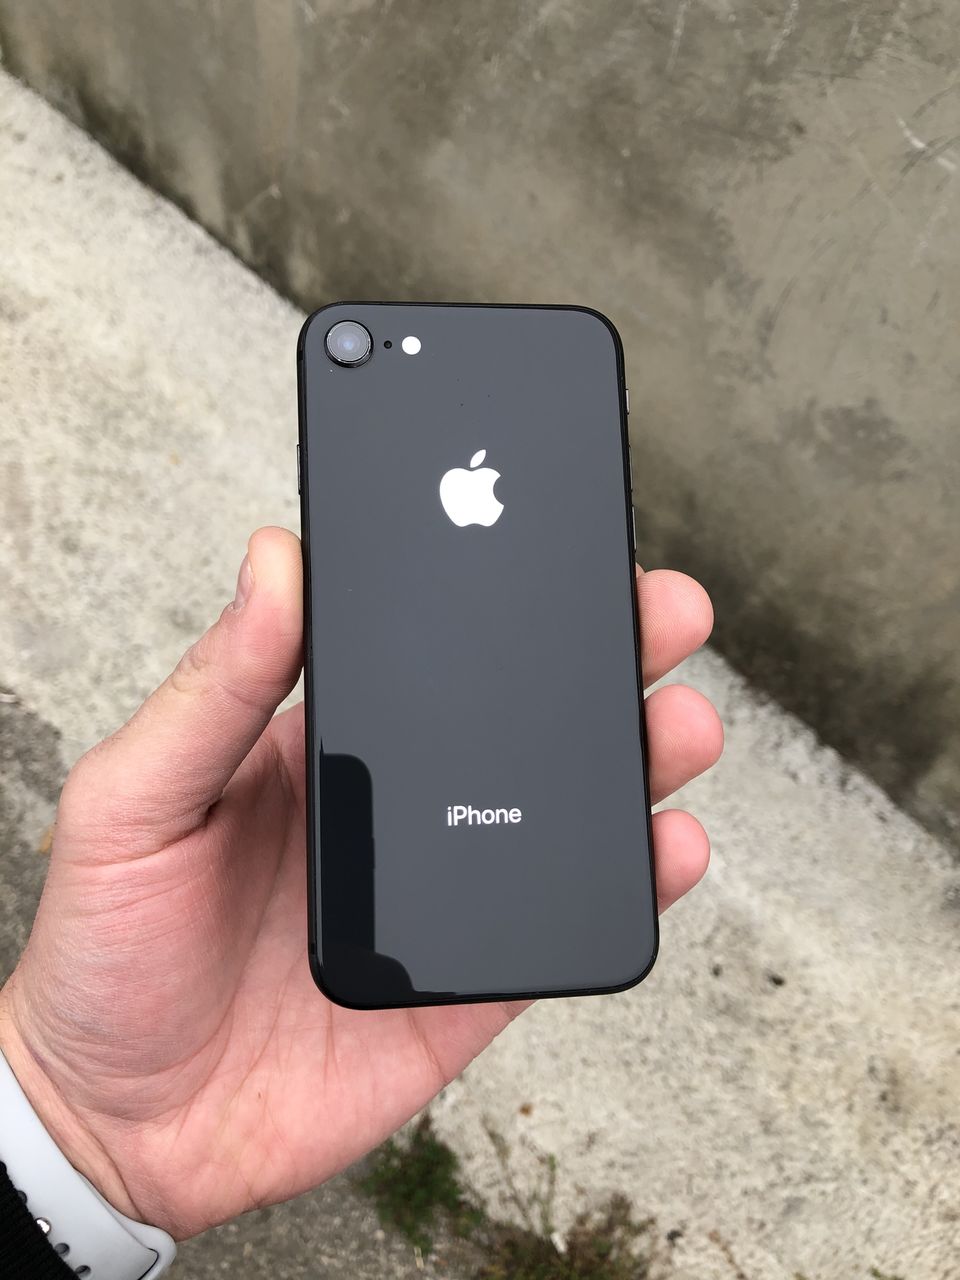 Iphone 8 Купить Новый Оригинал